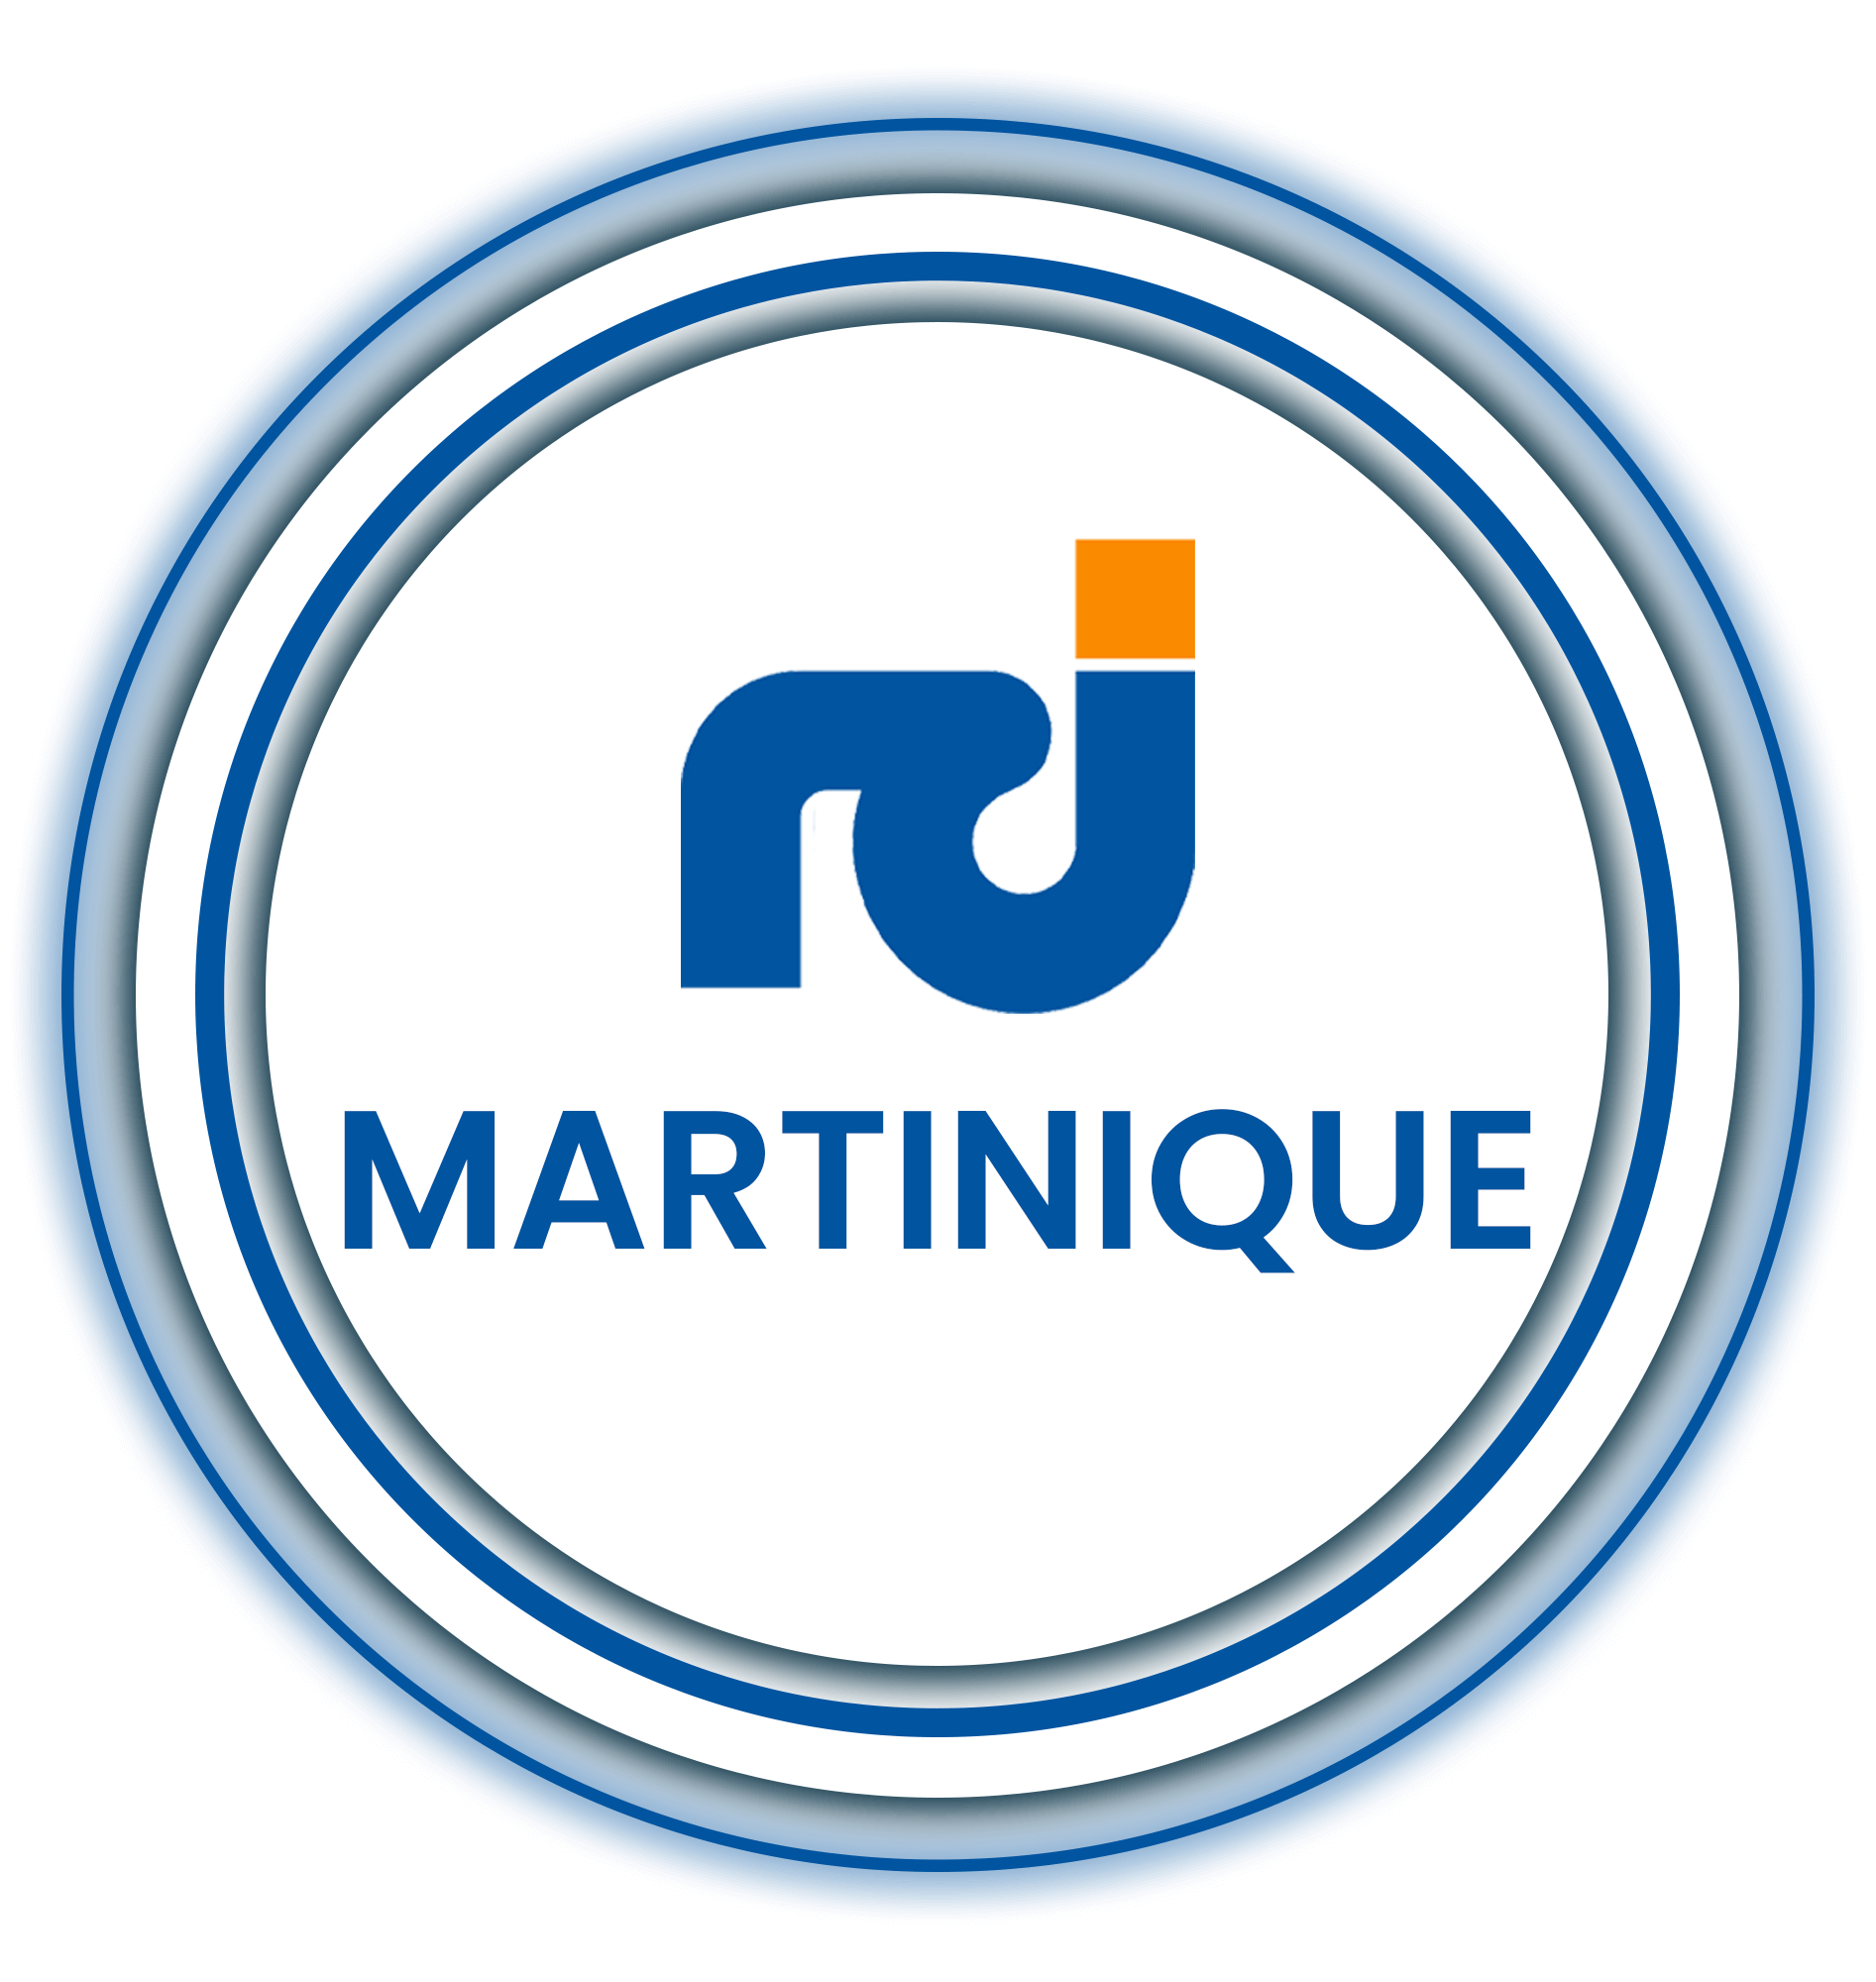 RCI Martinique